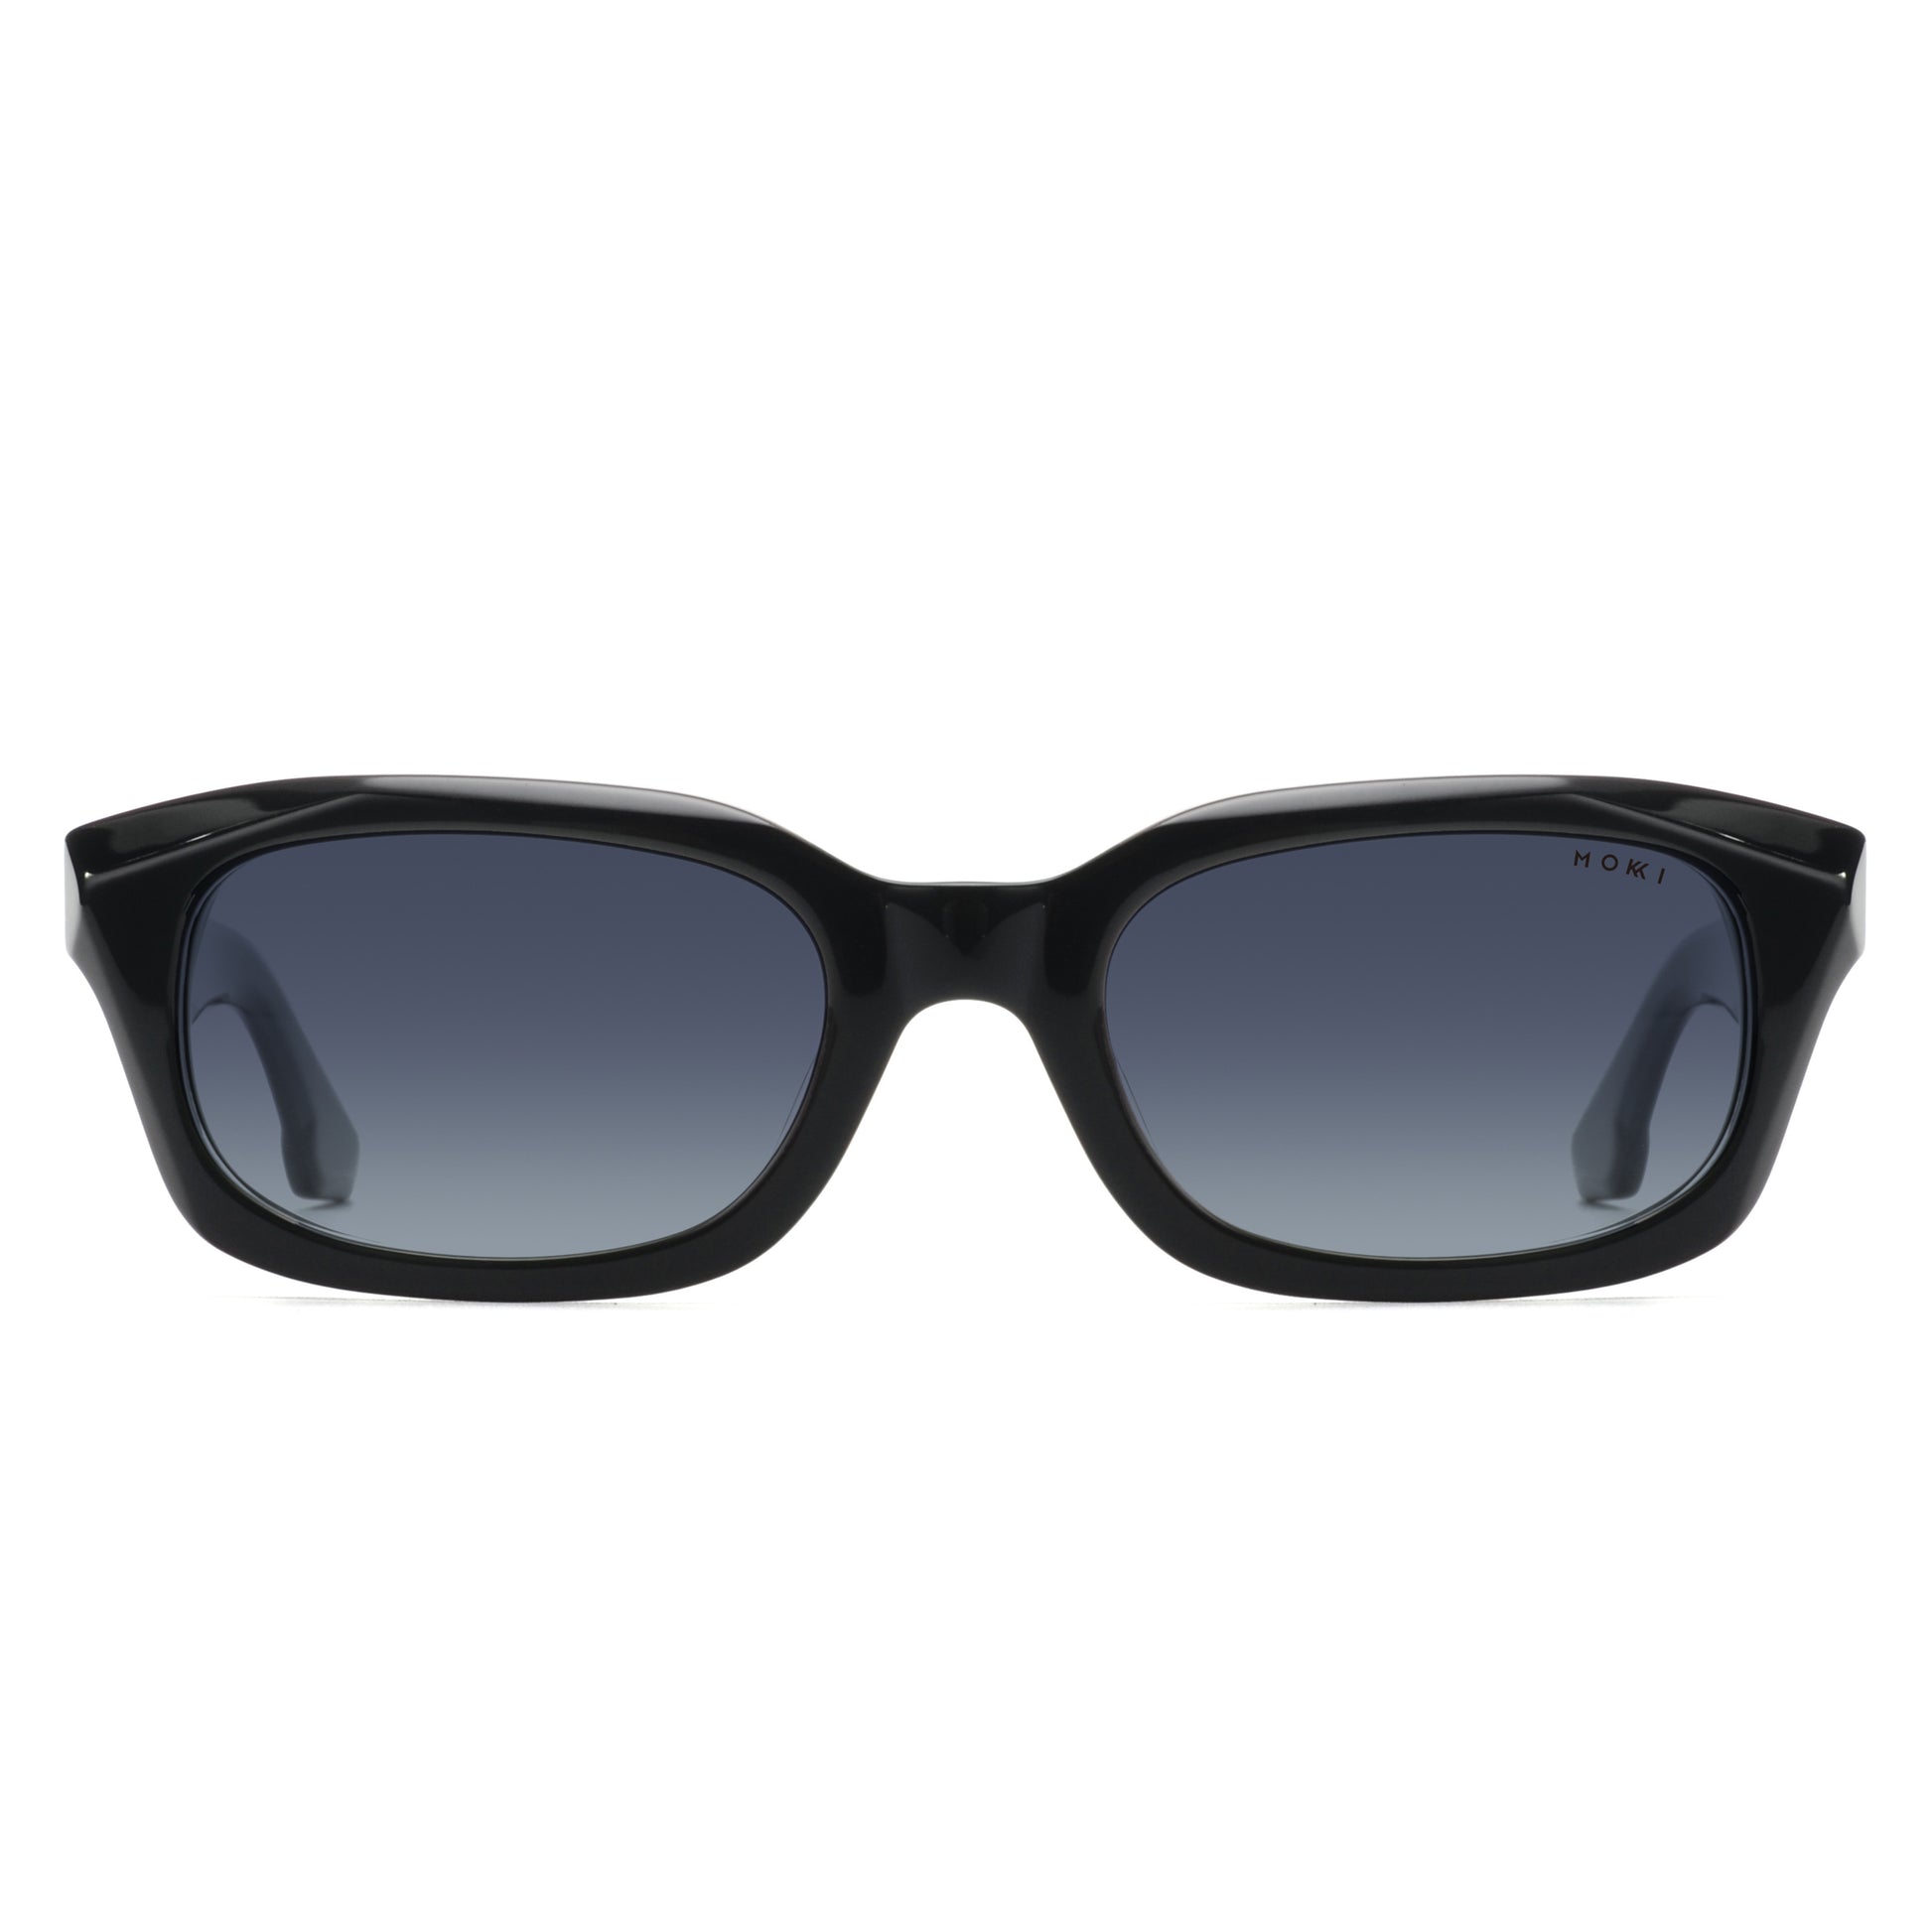 Mokki Slim Ovals sunglasses in black